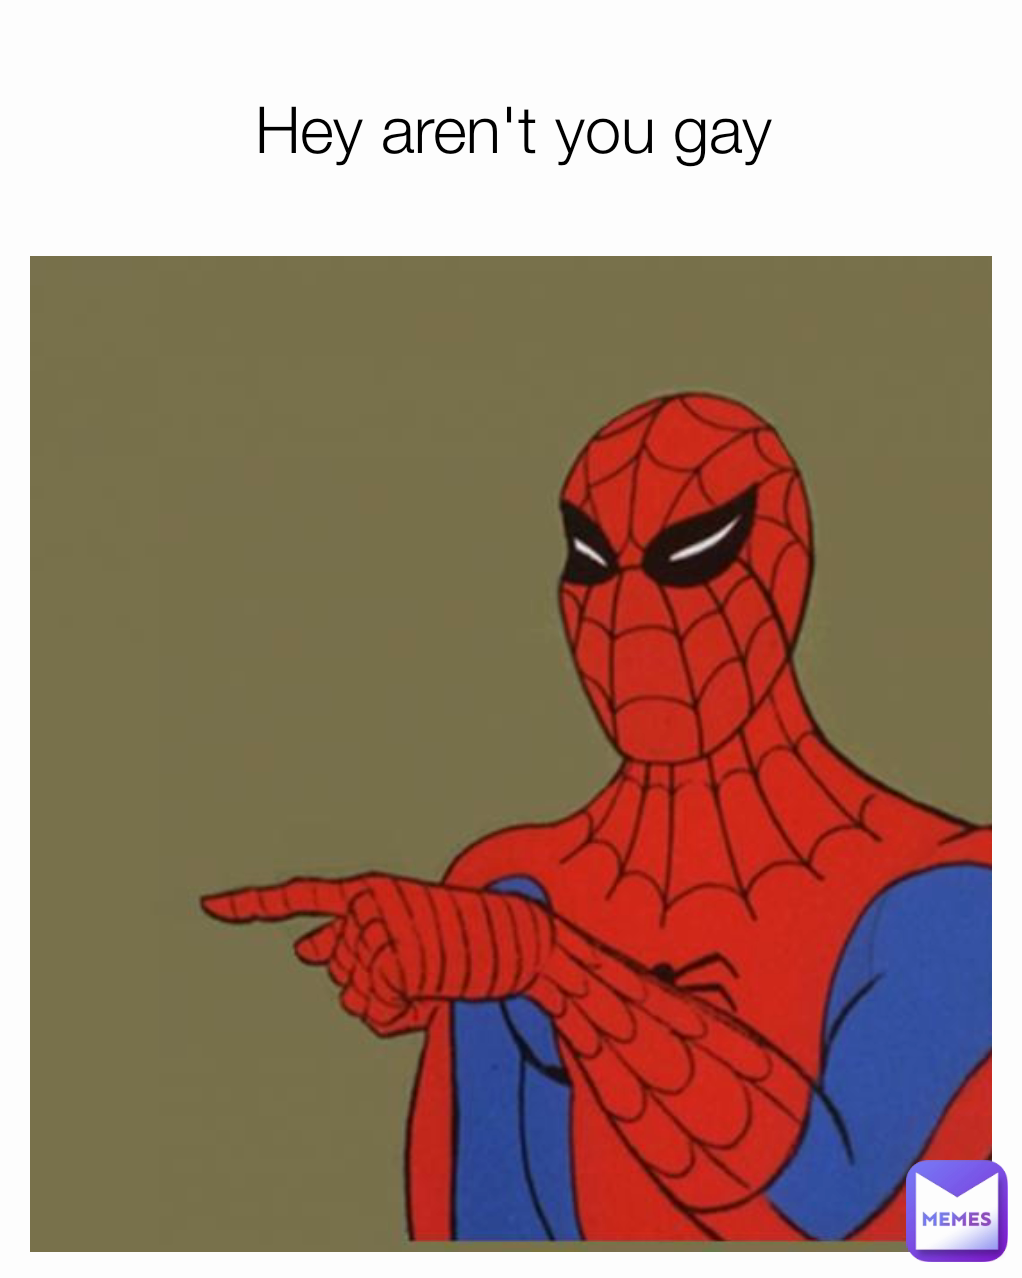 Hey aren't you gay